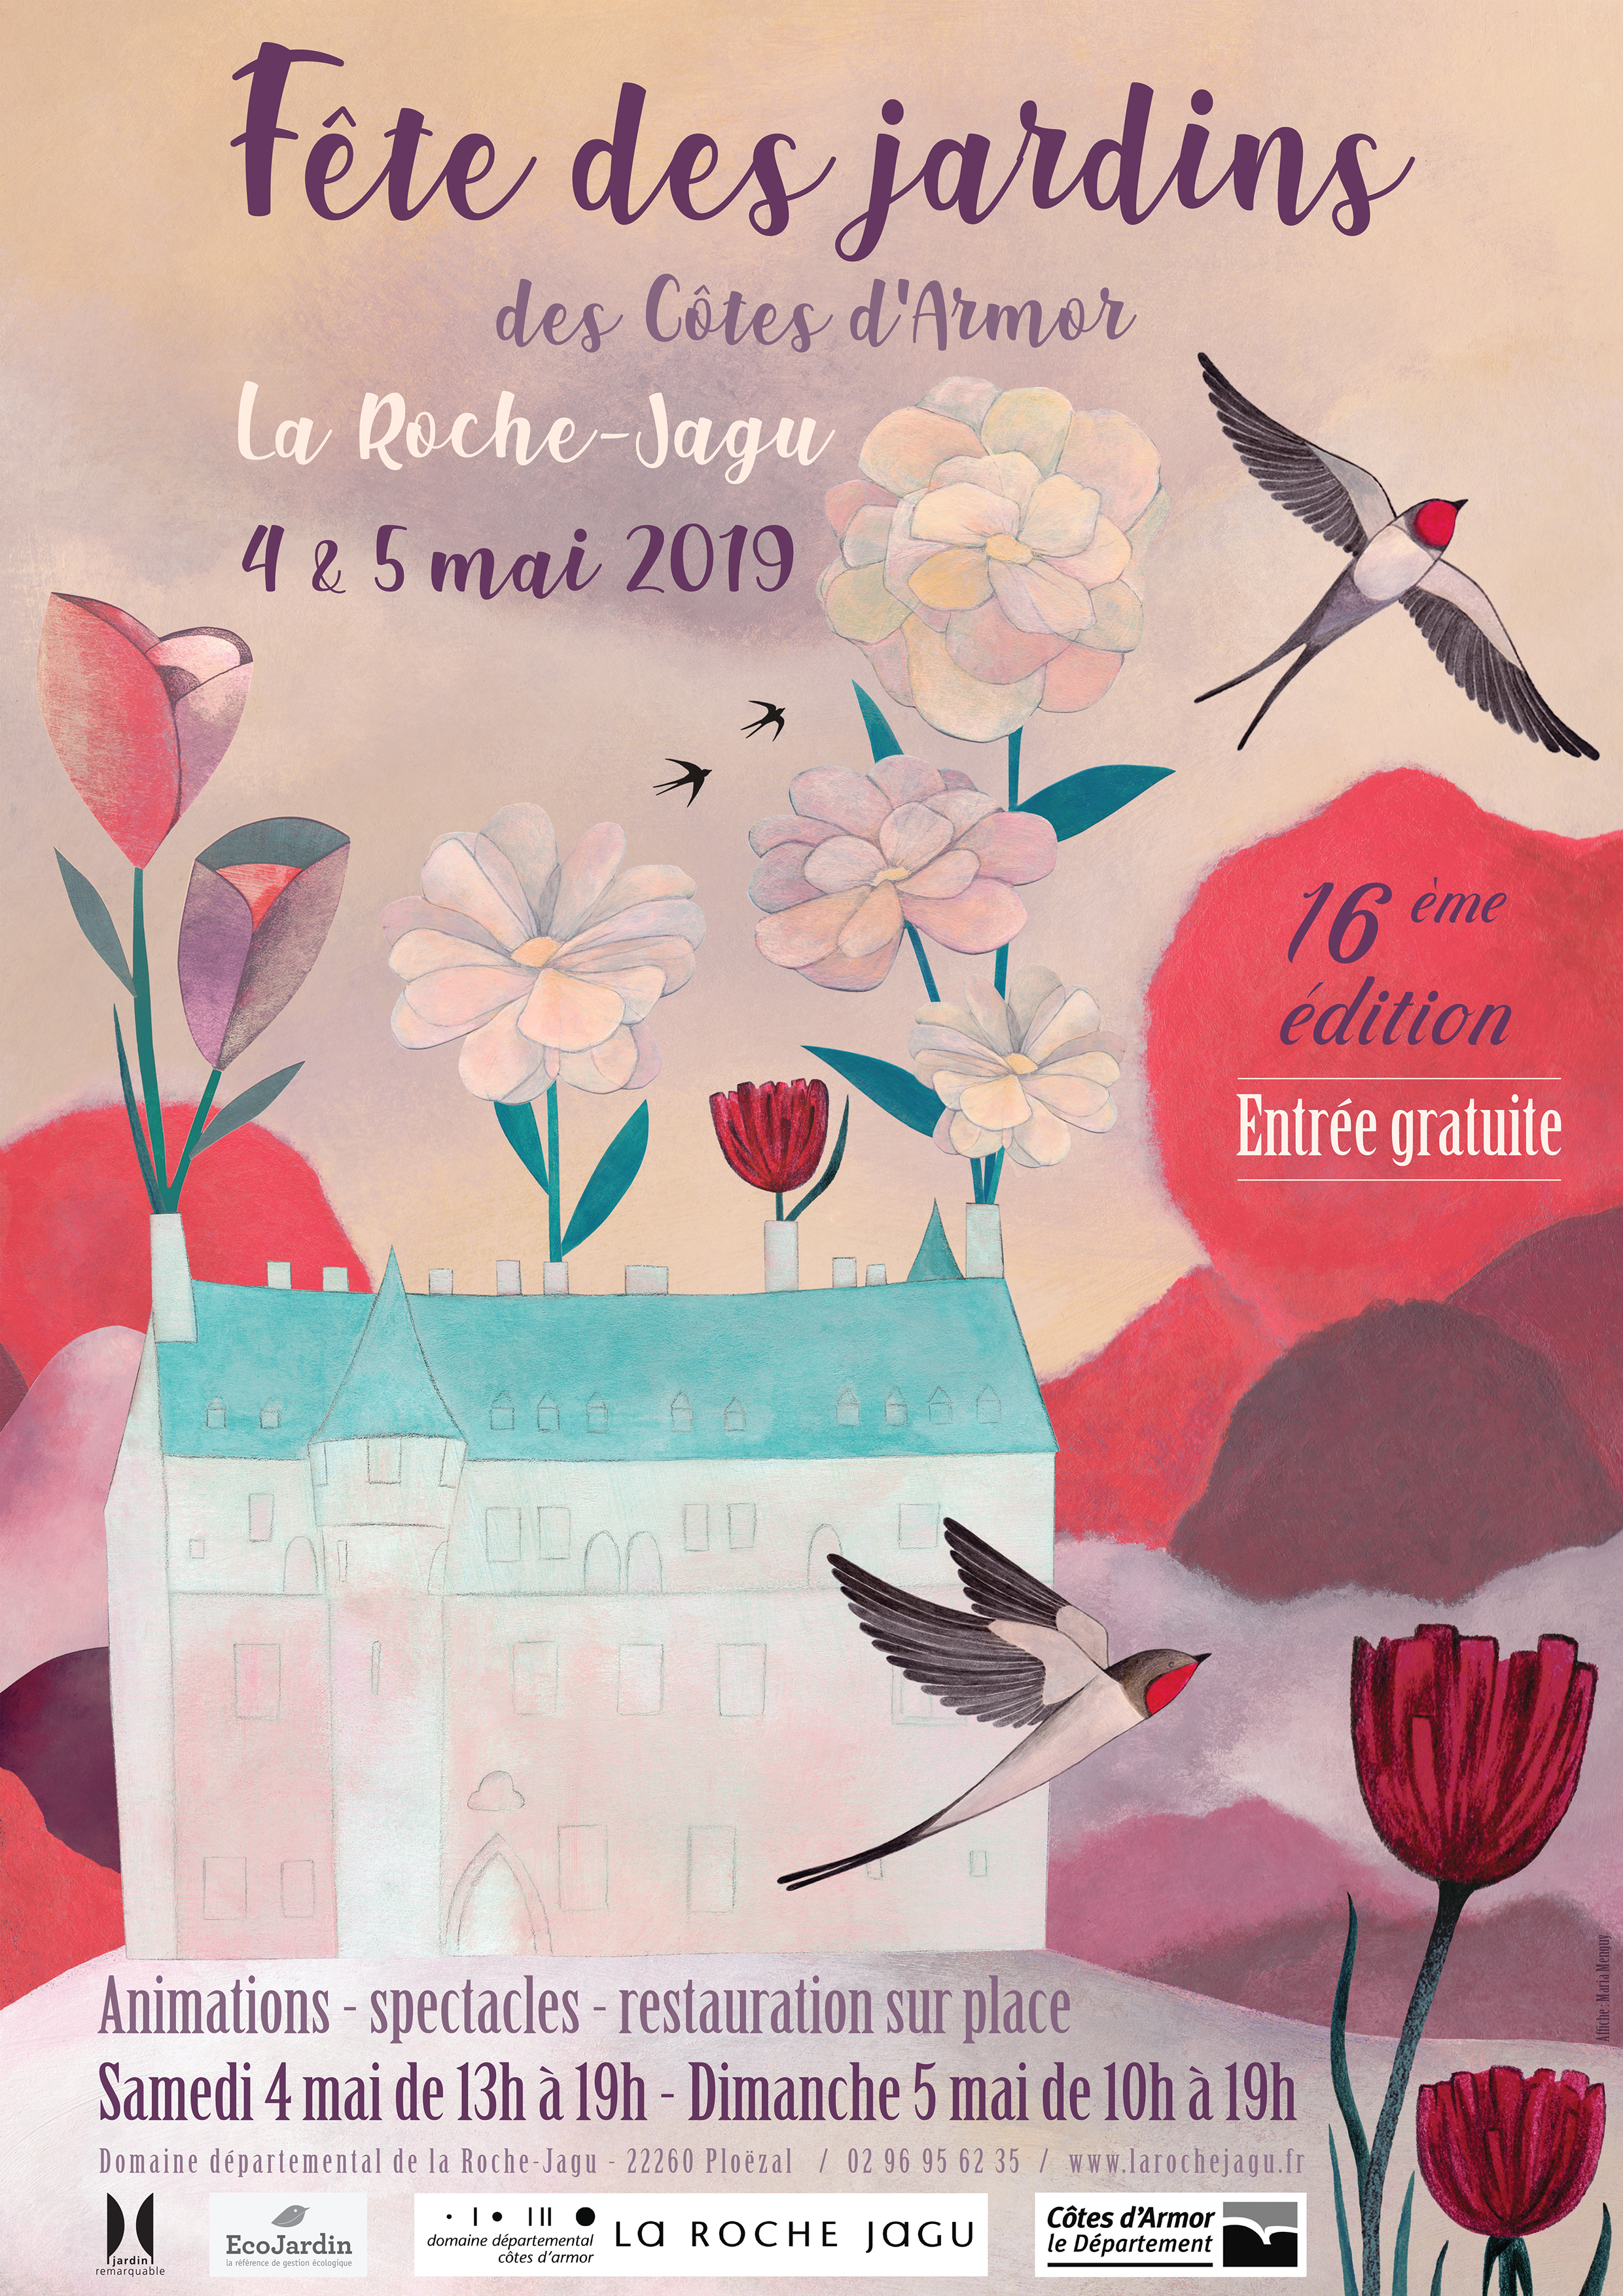 La Roche-Jagu, Fêtes des jardins les 4 et 5 mai 2019